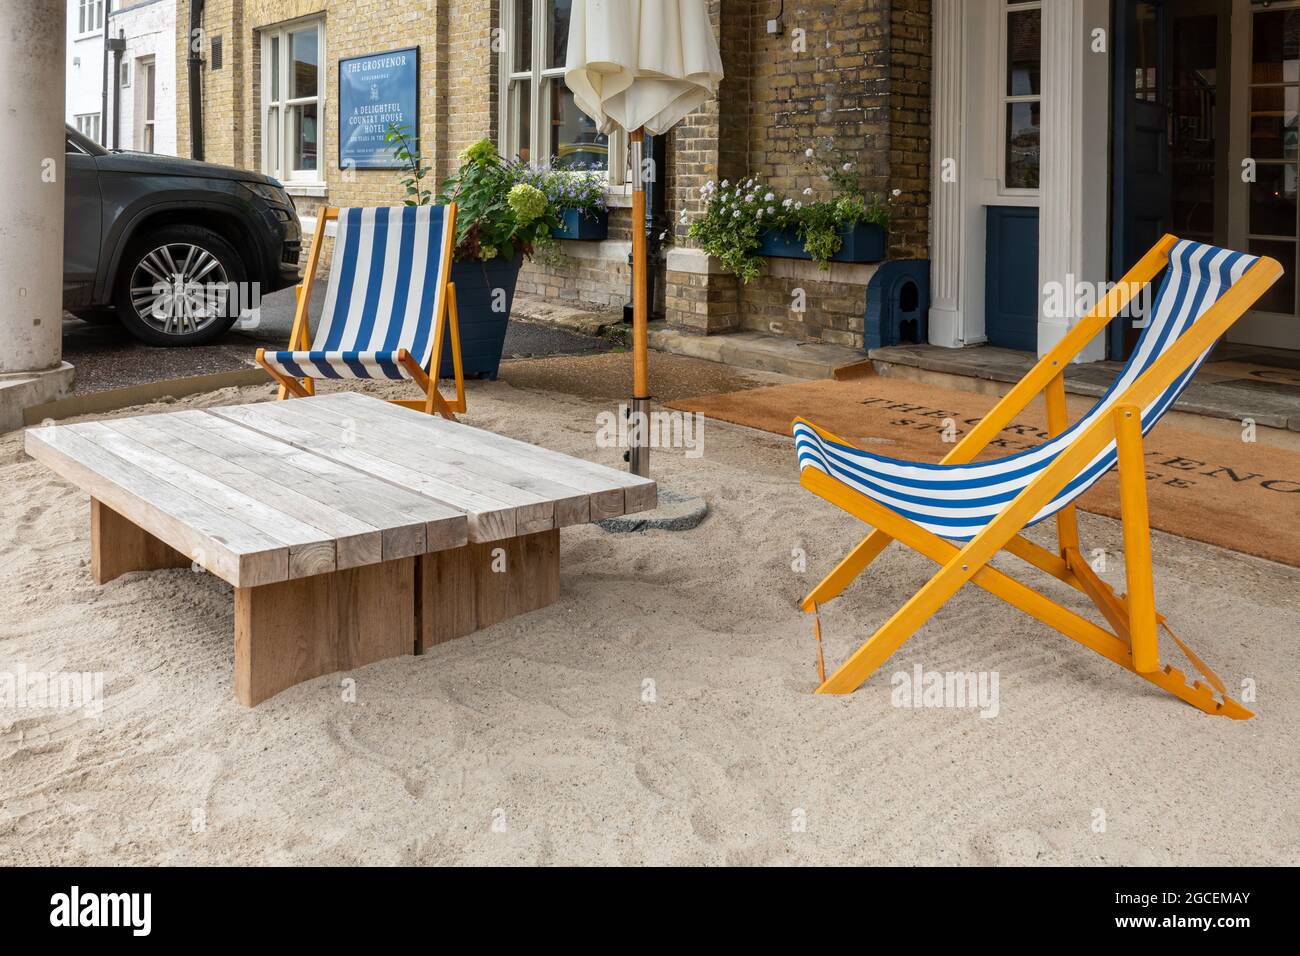 Das Grosvenor Hotel in der Hampshire-Stadt Stockbridge, England, Großbritannien, mit Liegestühlen und künstelndem Sandstrand auf der Veranda, Aufenthalt 2021 Stockfoto